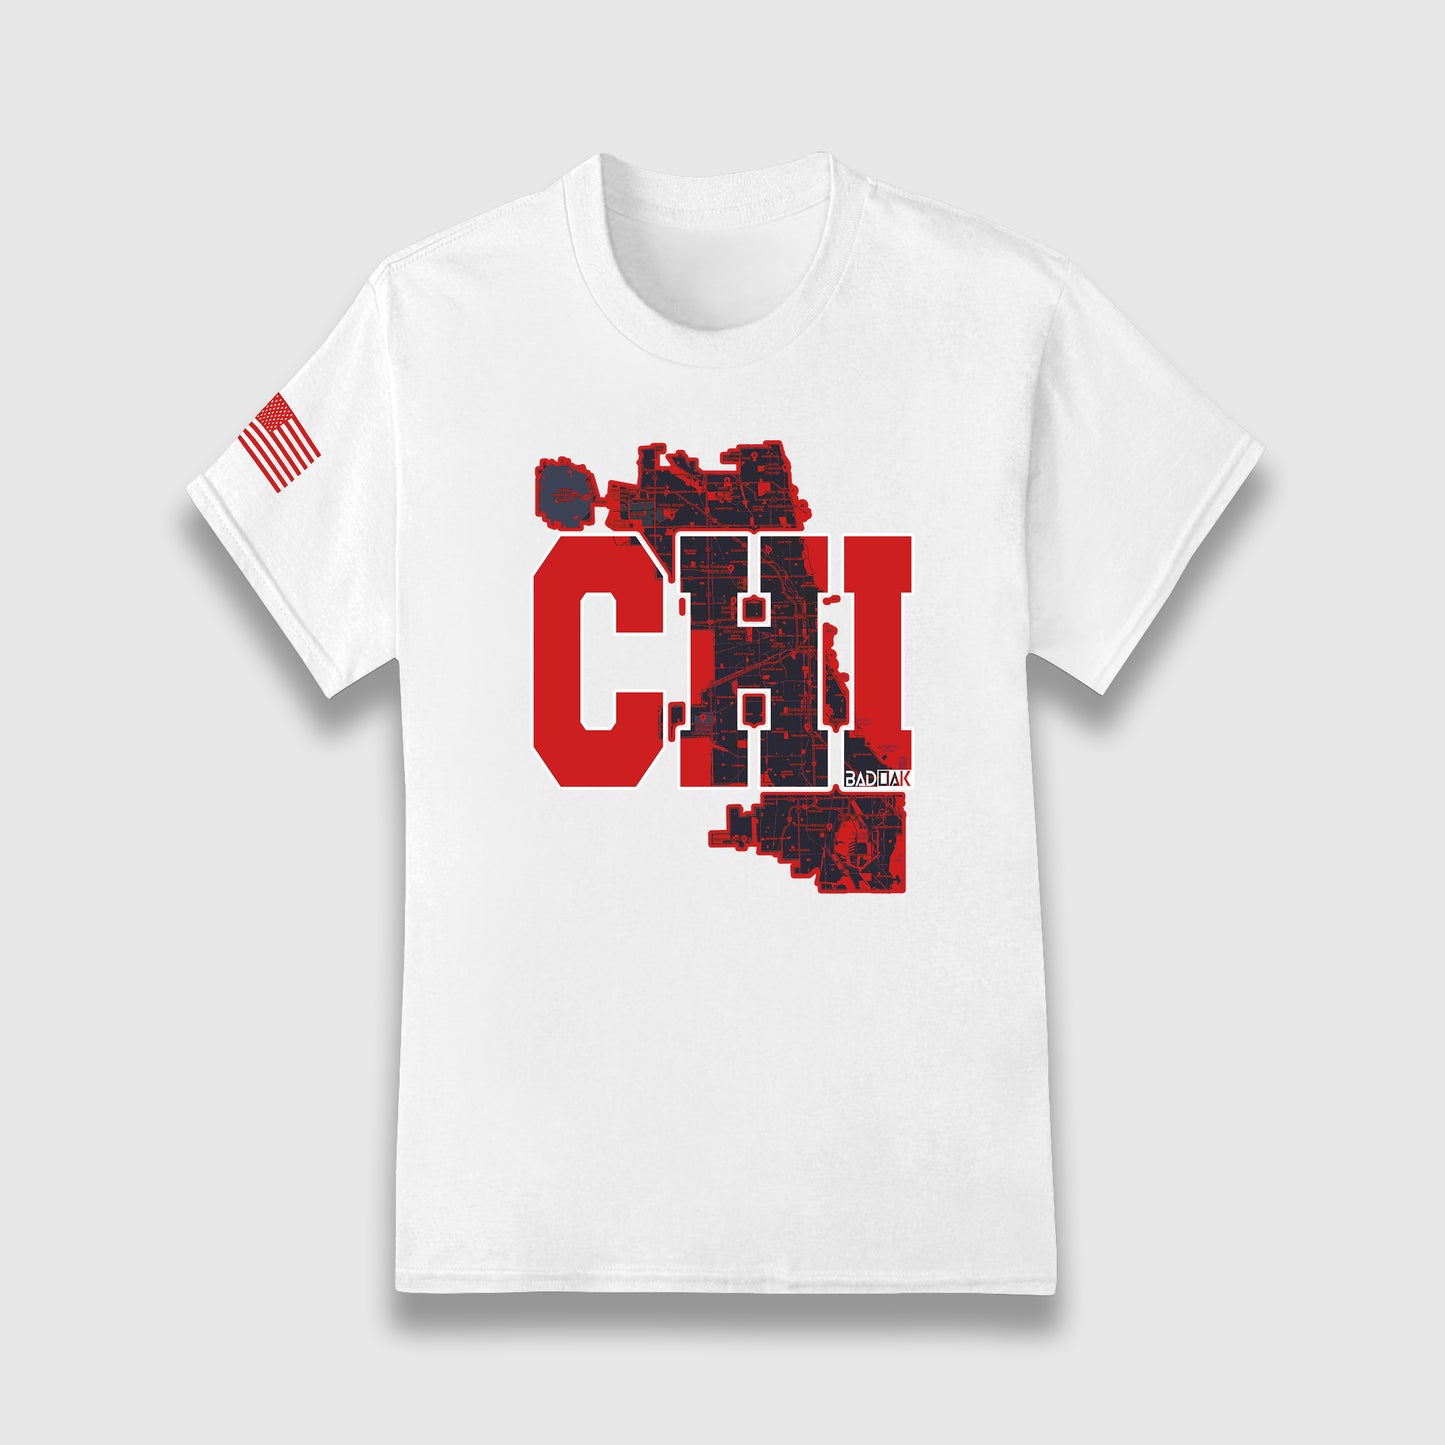 CHI (Chicago) Unisex T-Shirt - BAD OAK